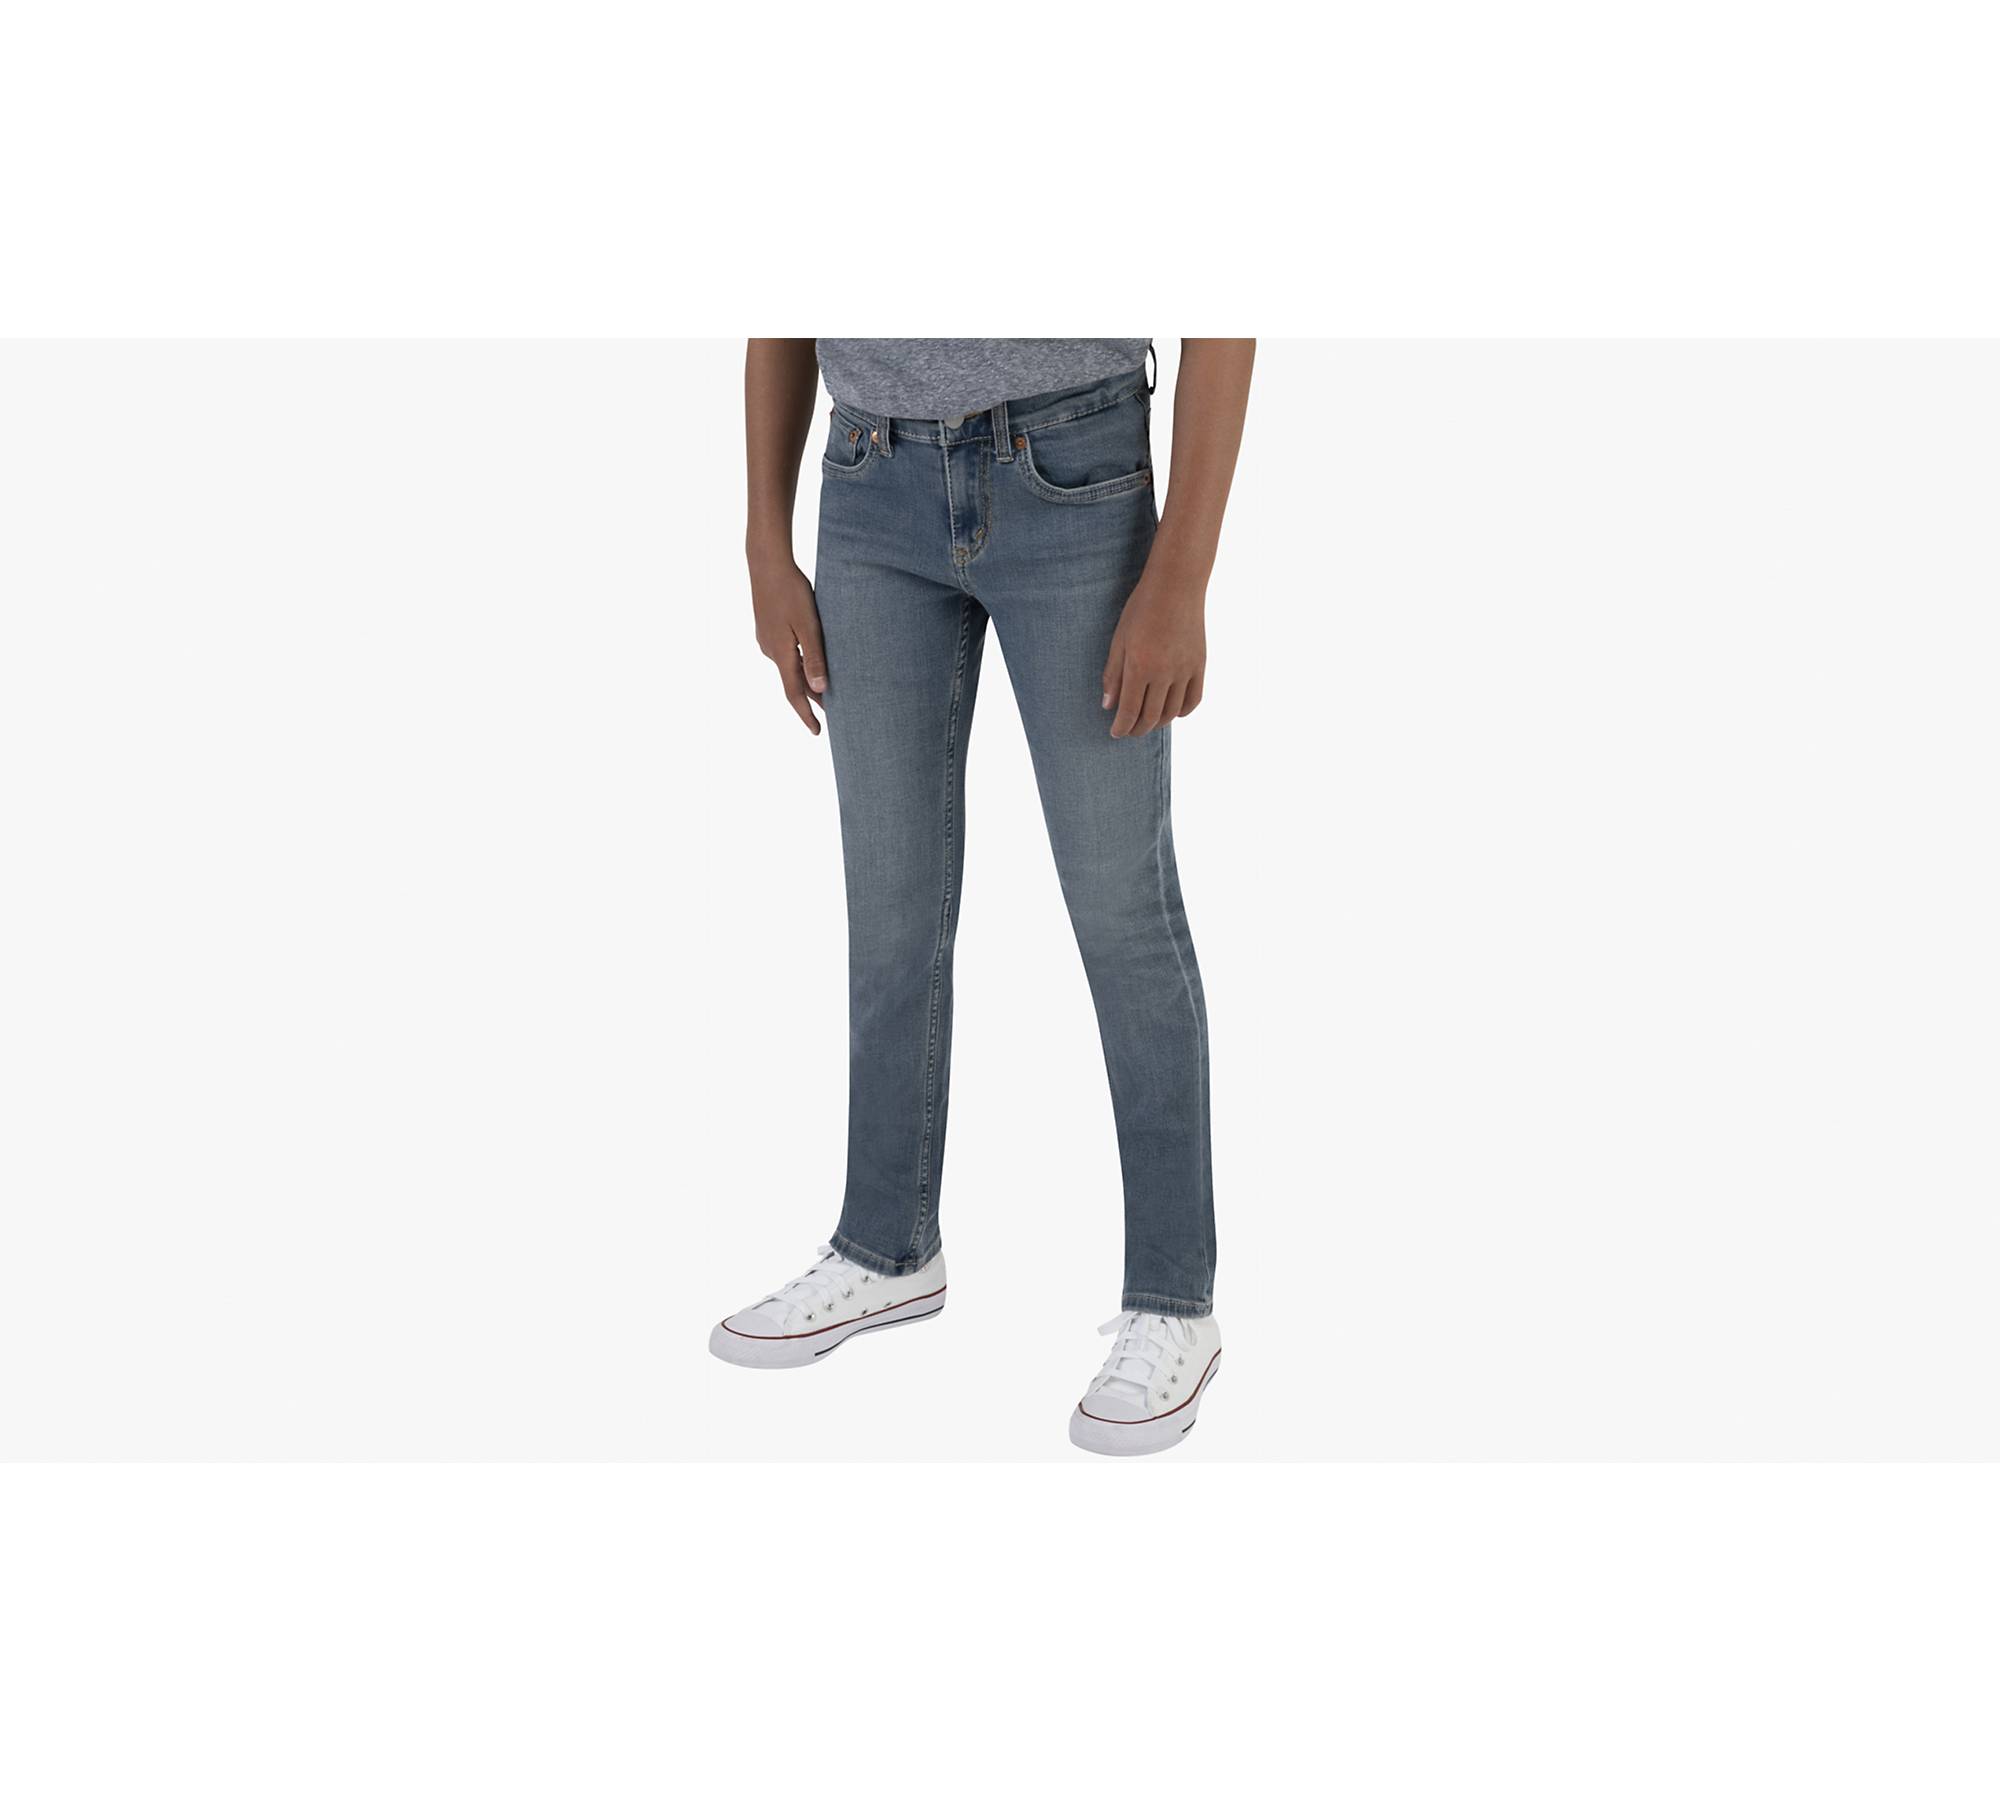 pessimistisk Atticus antage 512™ Slim Taper Fit Big Boys Jeans 8-20 - Medium Wash | Levi's® US